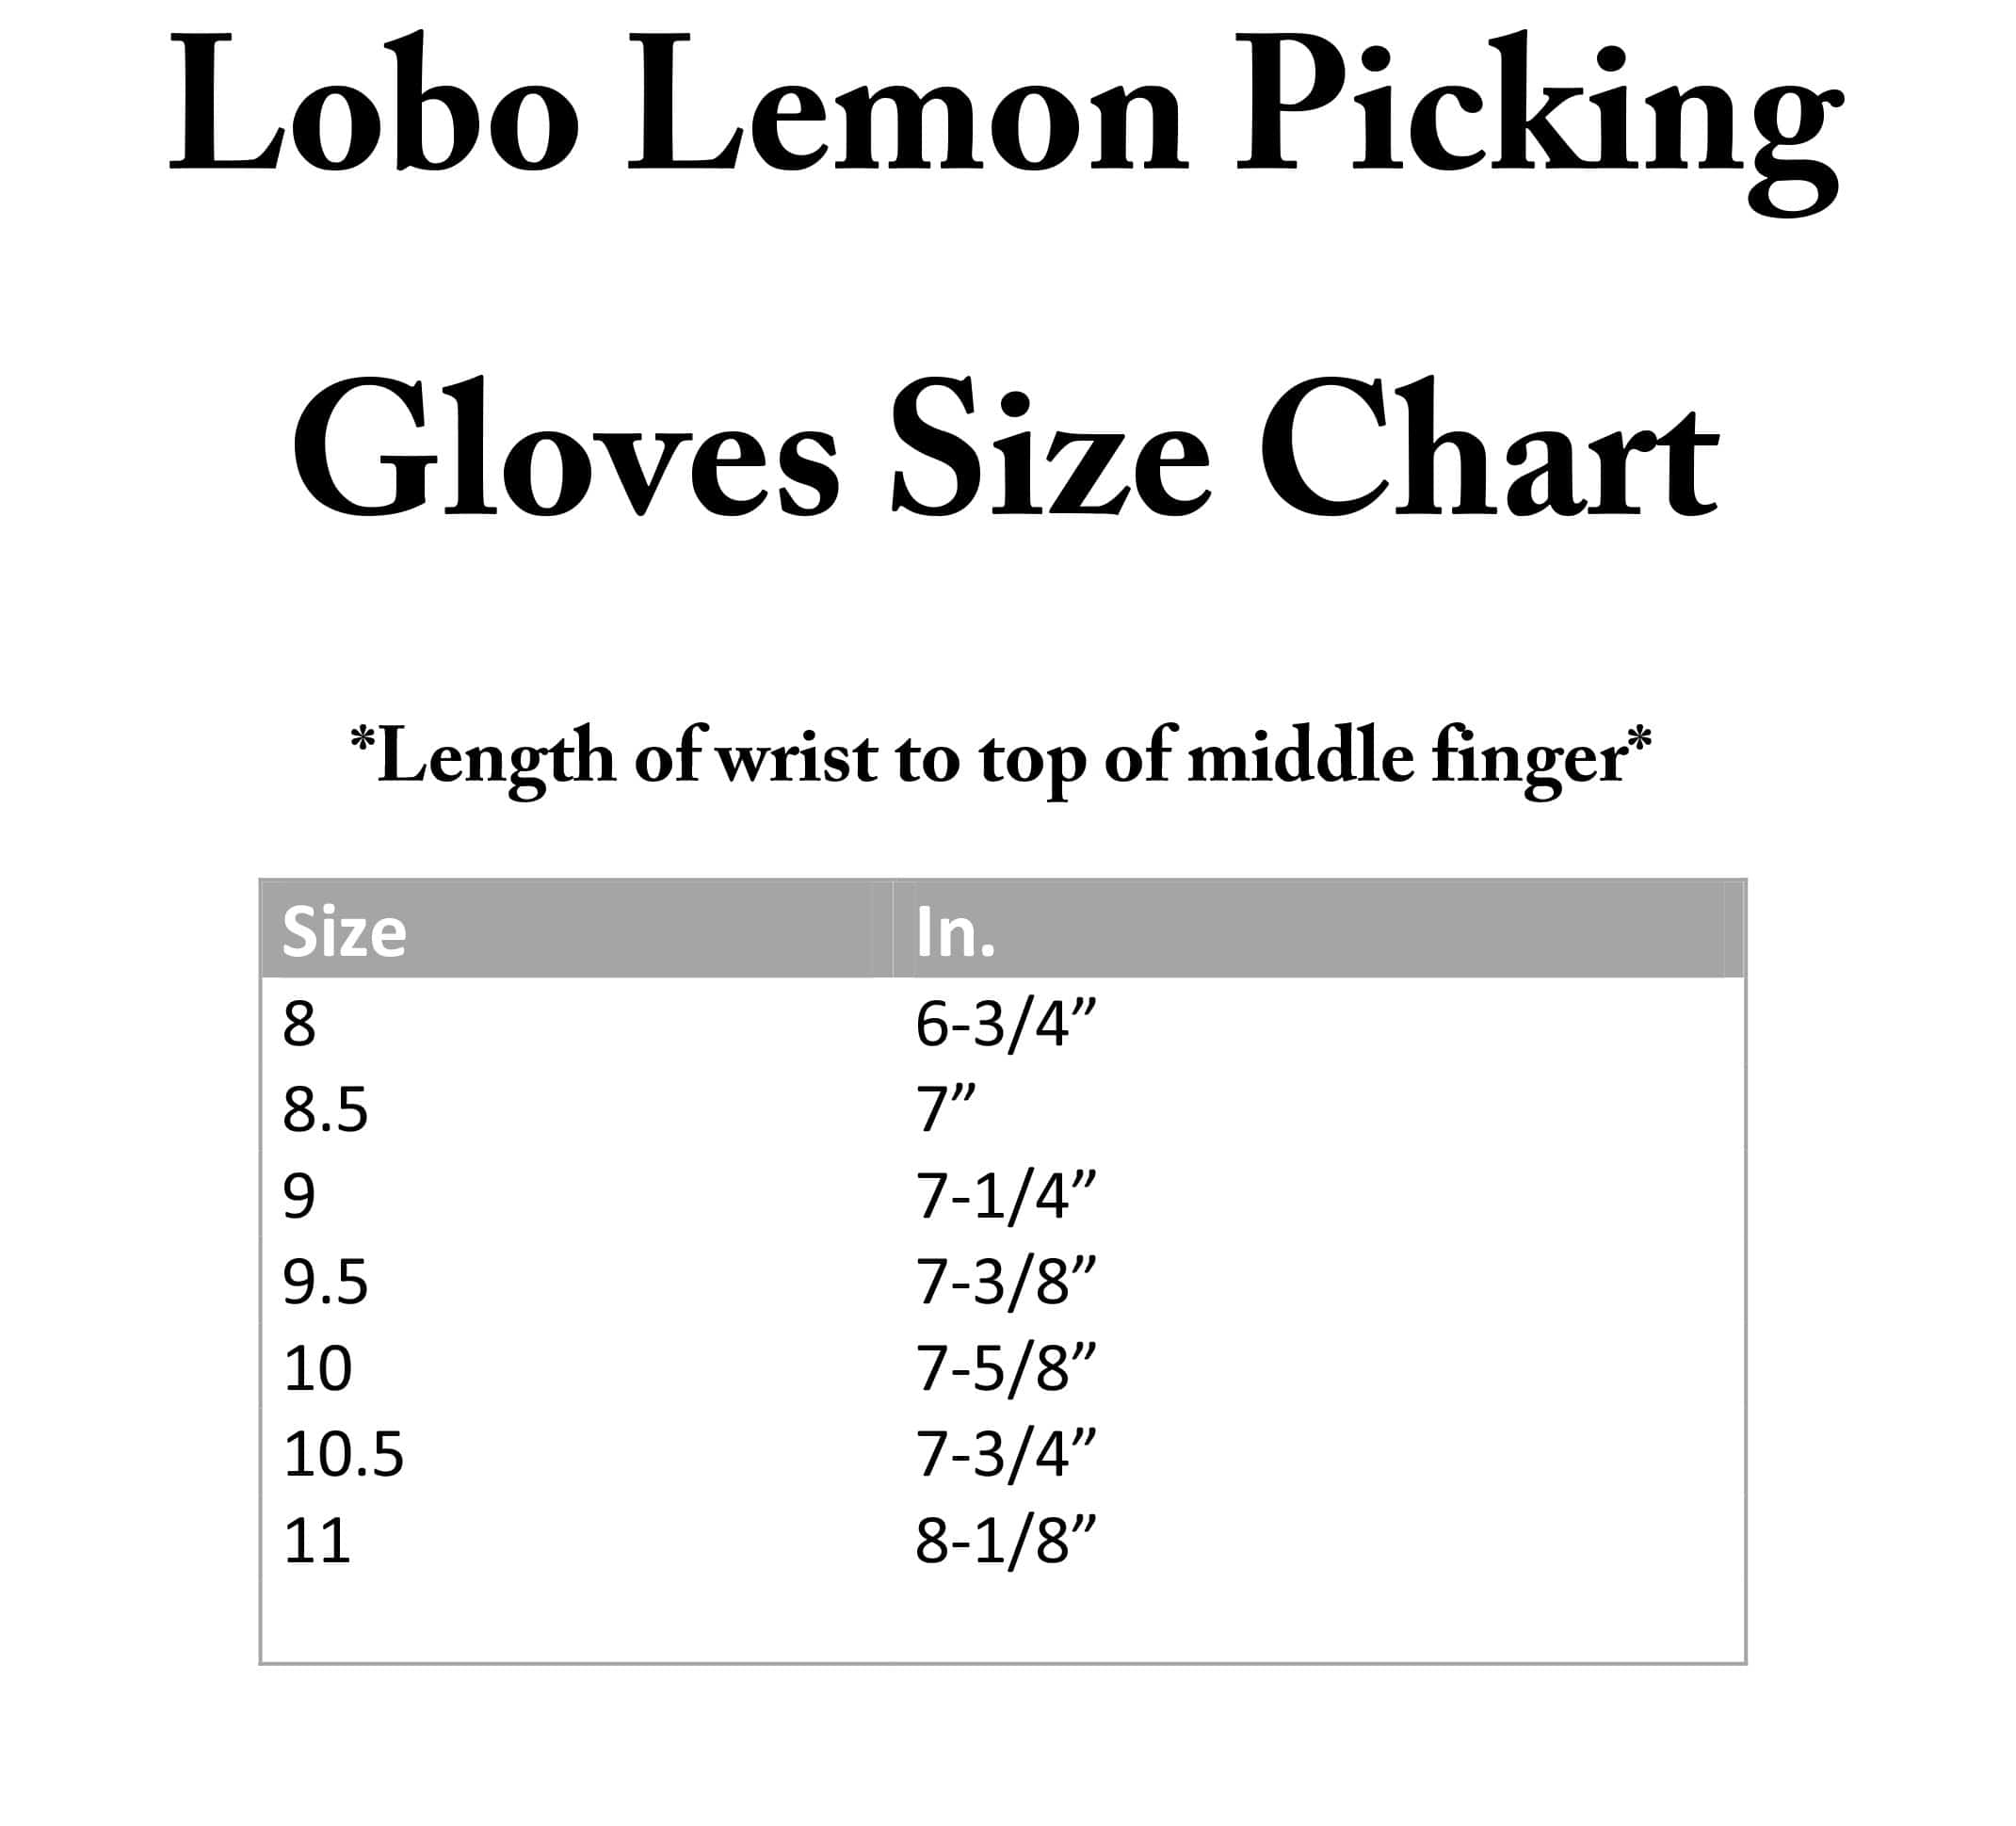 Lobo Lemon Gloves Size Chart